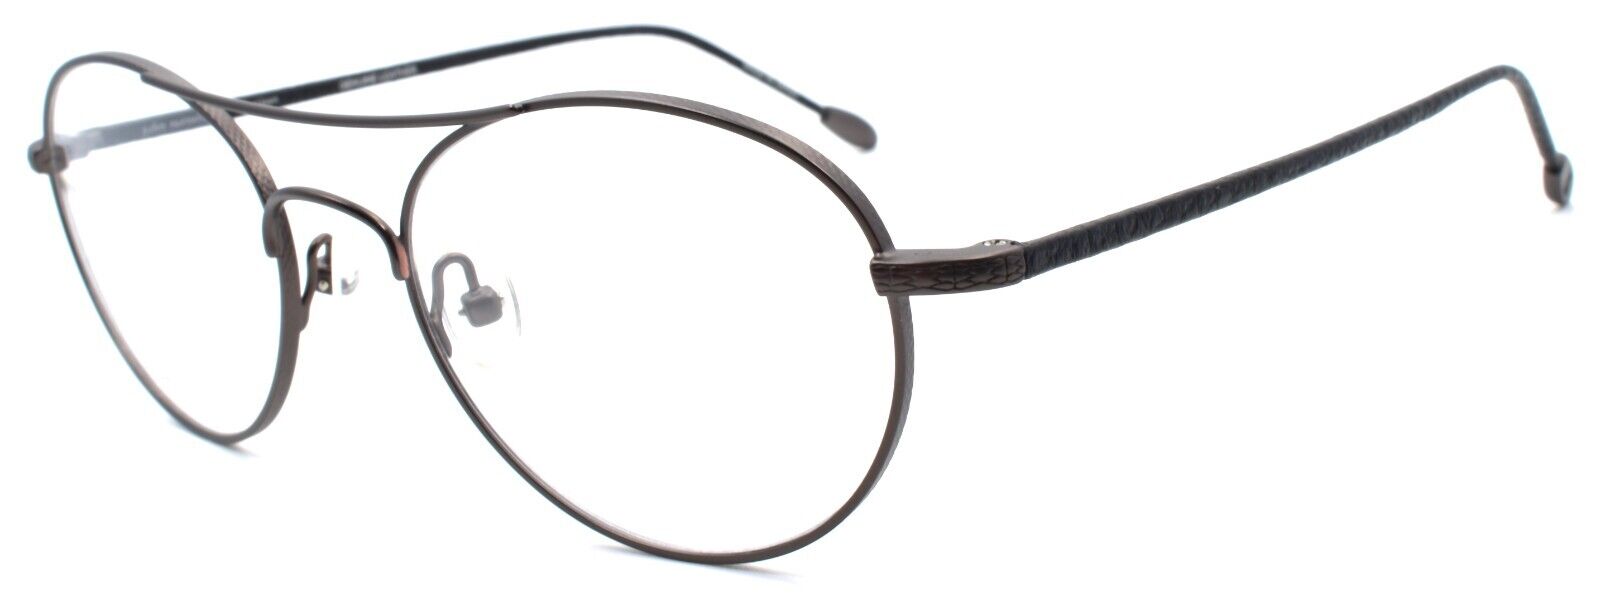 1-John Varvatos V158 Men's Eyeglasses Aviator 51-19-145 Gunmetal Japan-751286297980-IKSpecs